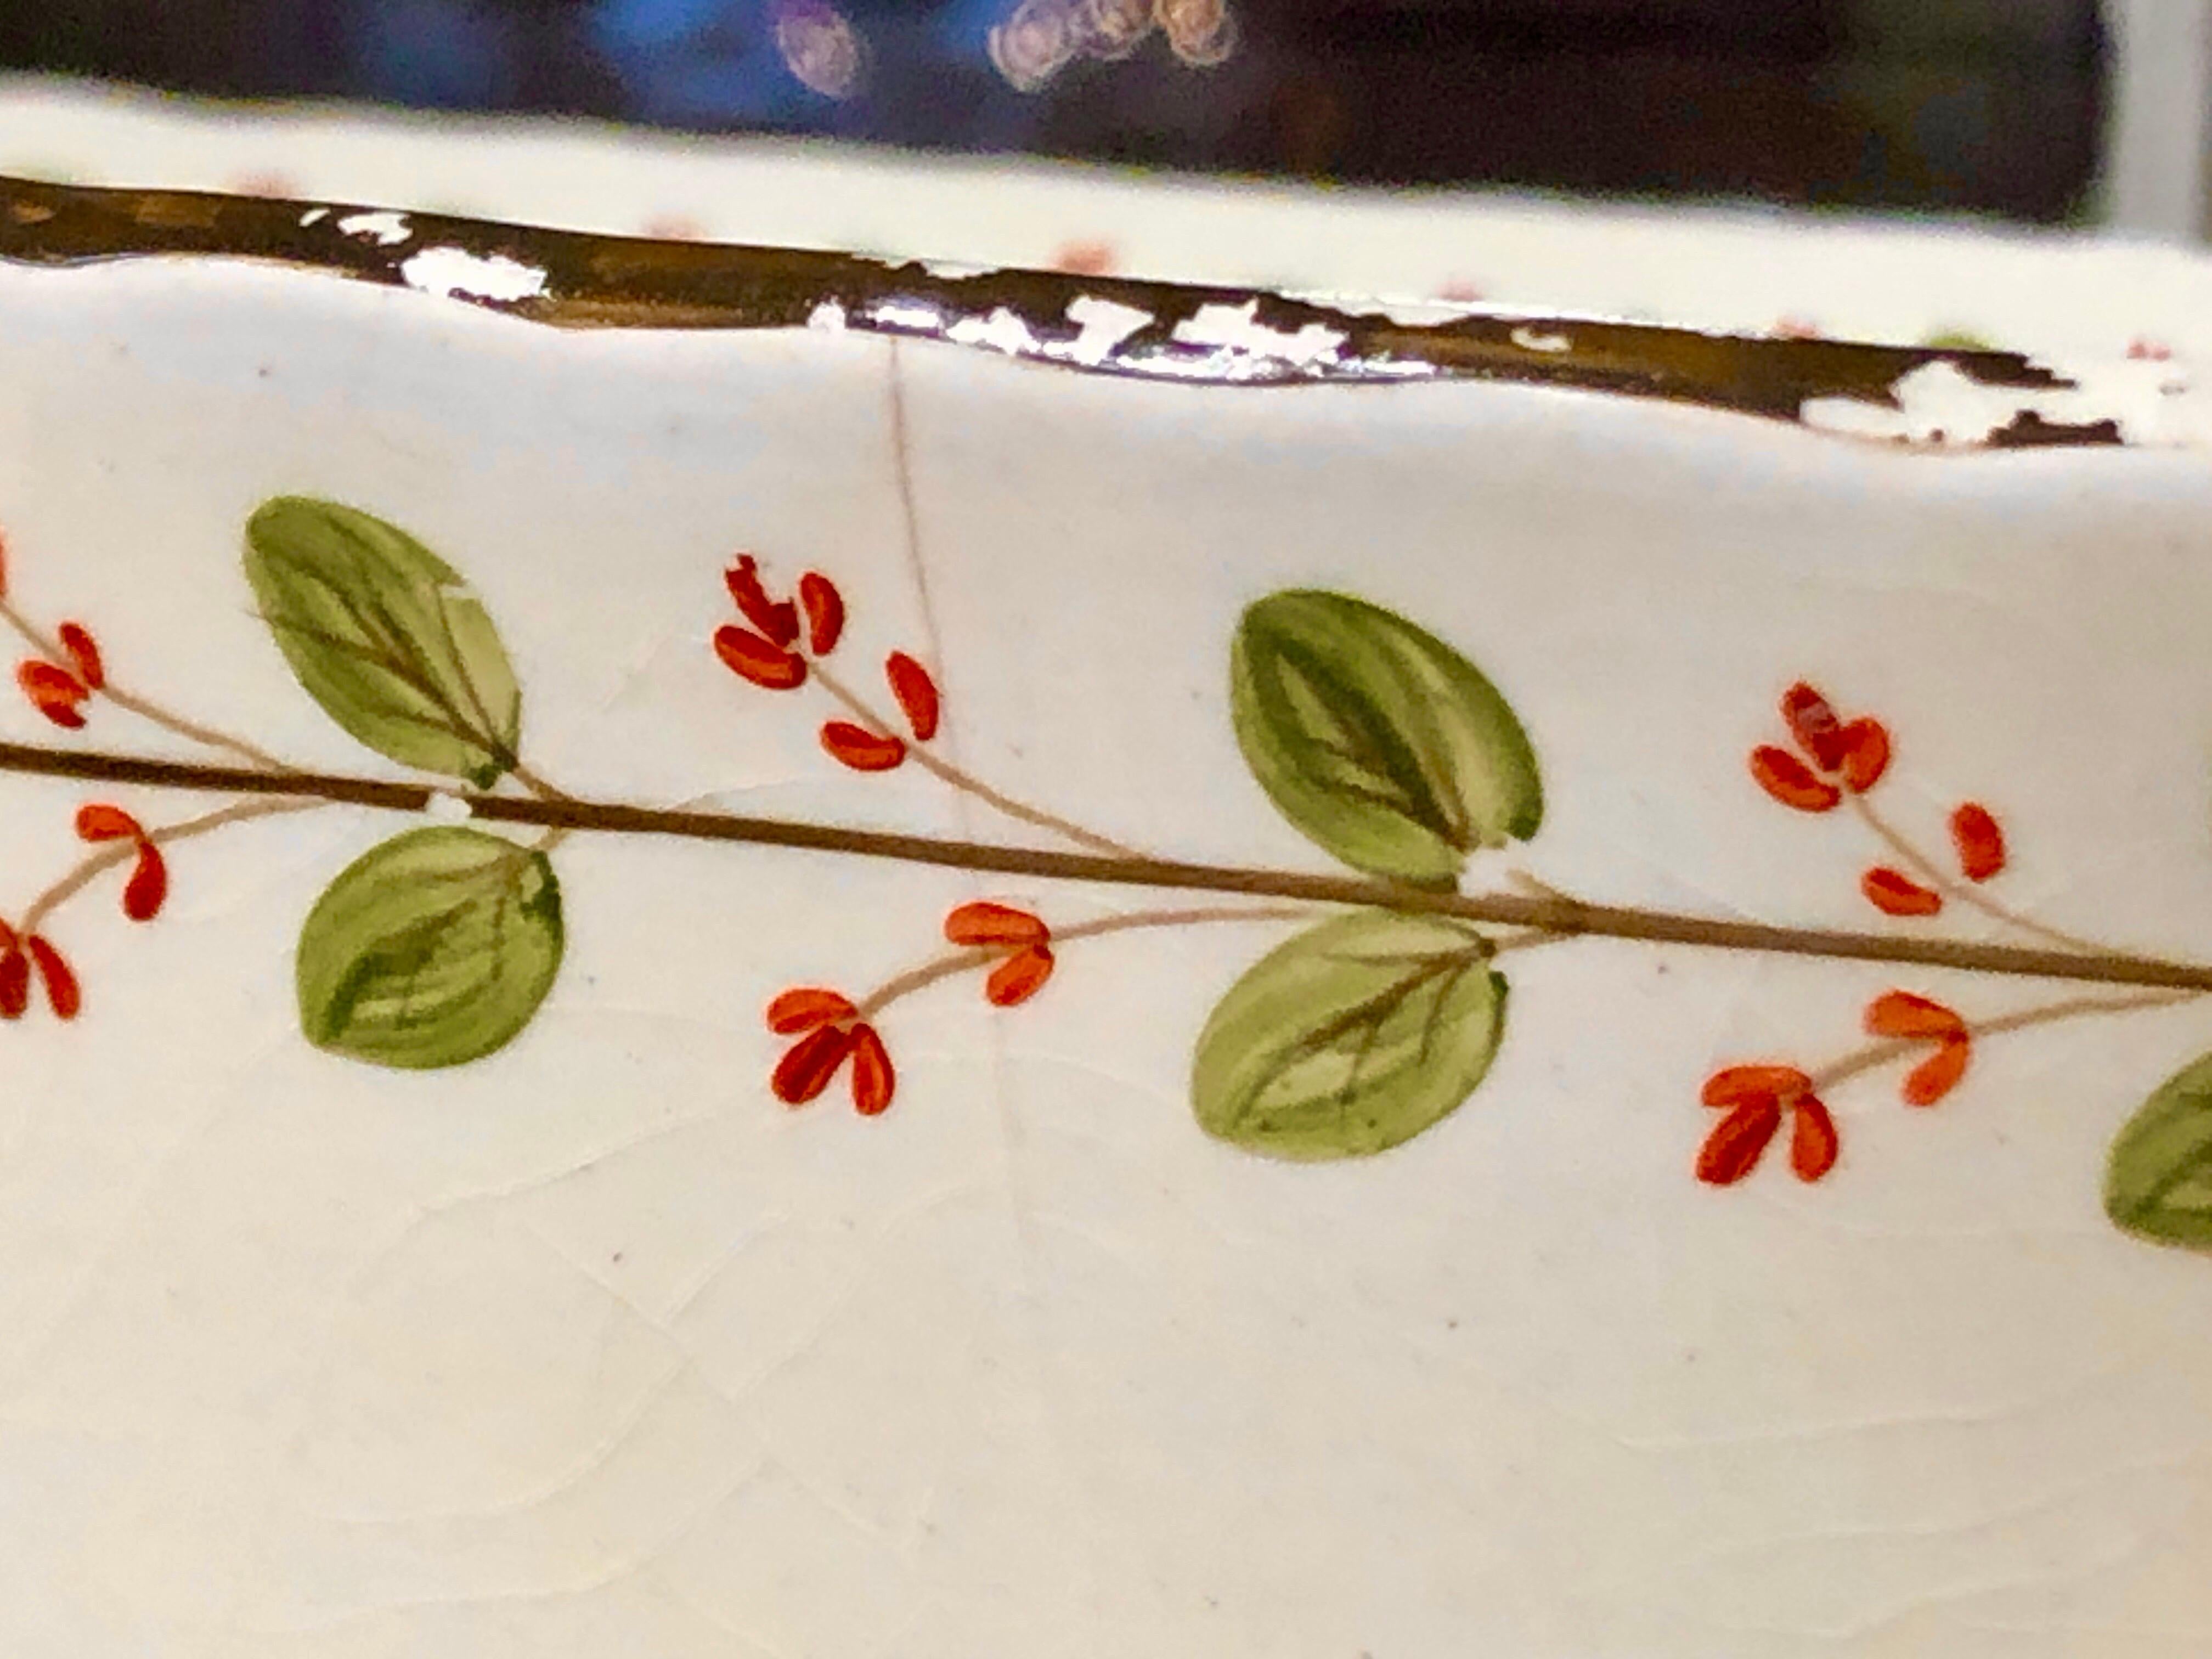 Seltener & wichtiger antiker englischer großer Wedgwood Queensware (Creamware) Tafelaufsatz mit Einflüssen von Robert Adam, die durch die auf der Außenseite der Schale modellierten Tressen und Festons dargestellt werden. (Die grünen Punkte auf dem